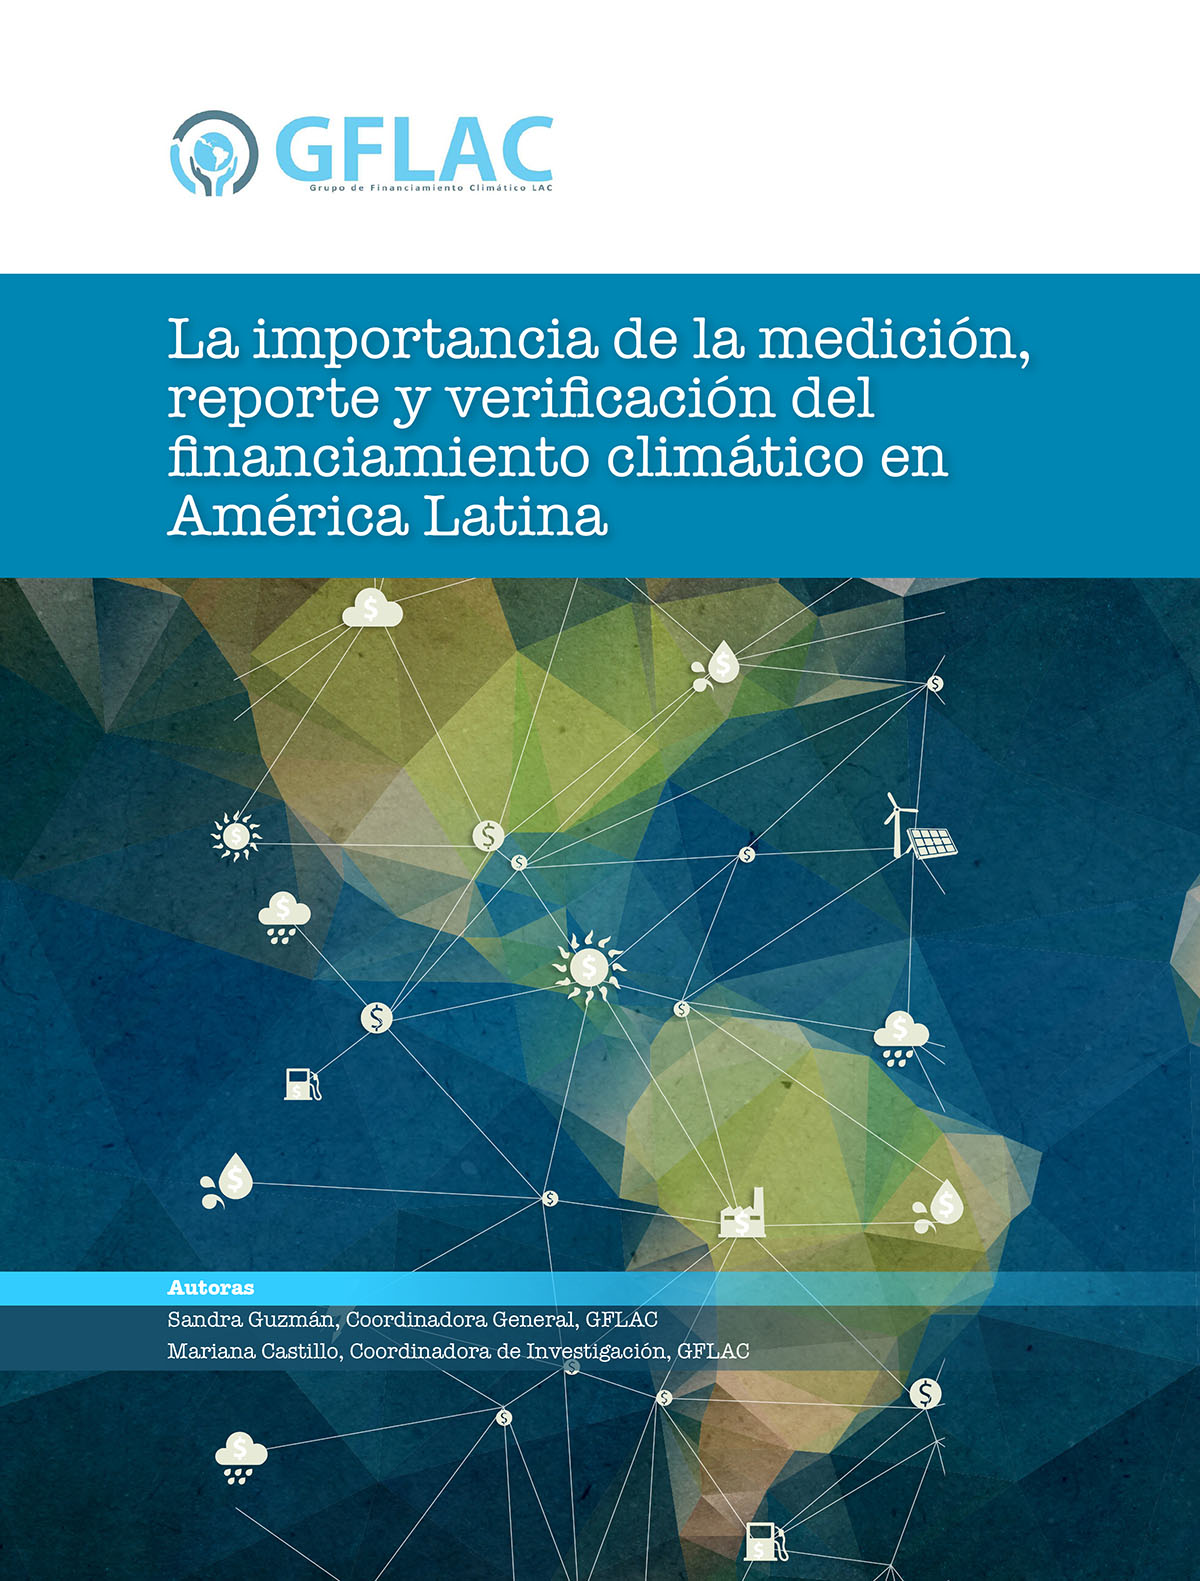 La importancia de la medición, reporte y verificación del financiamiento climático en América Latina